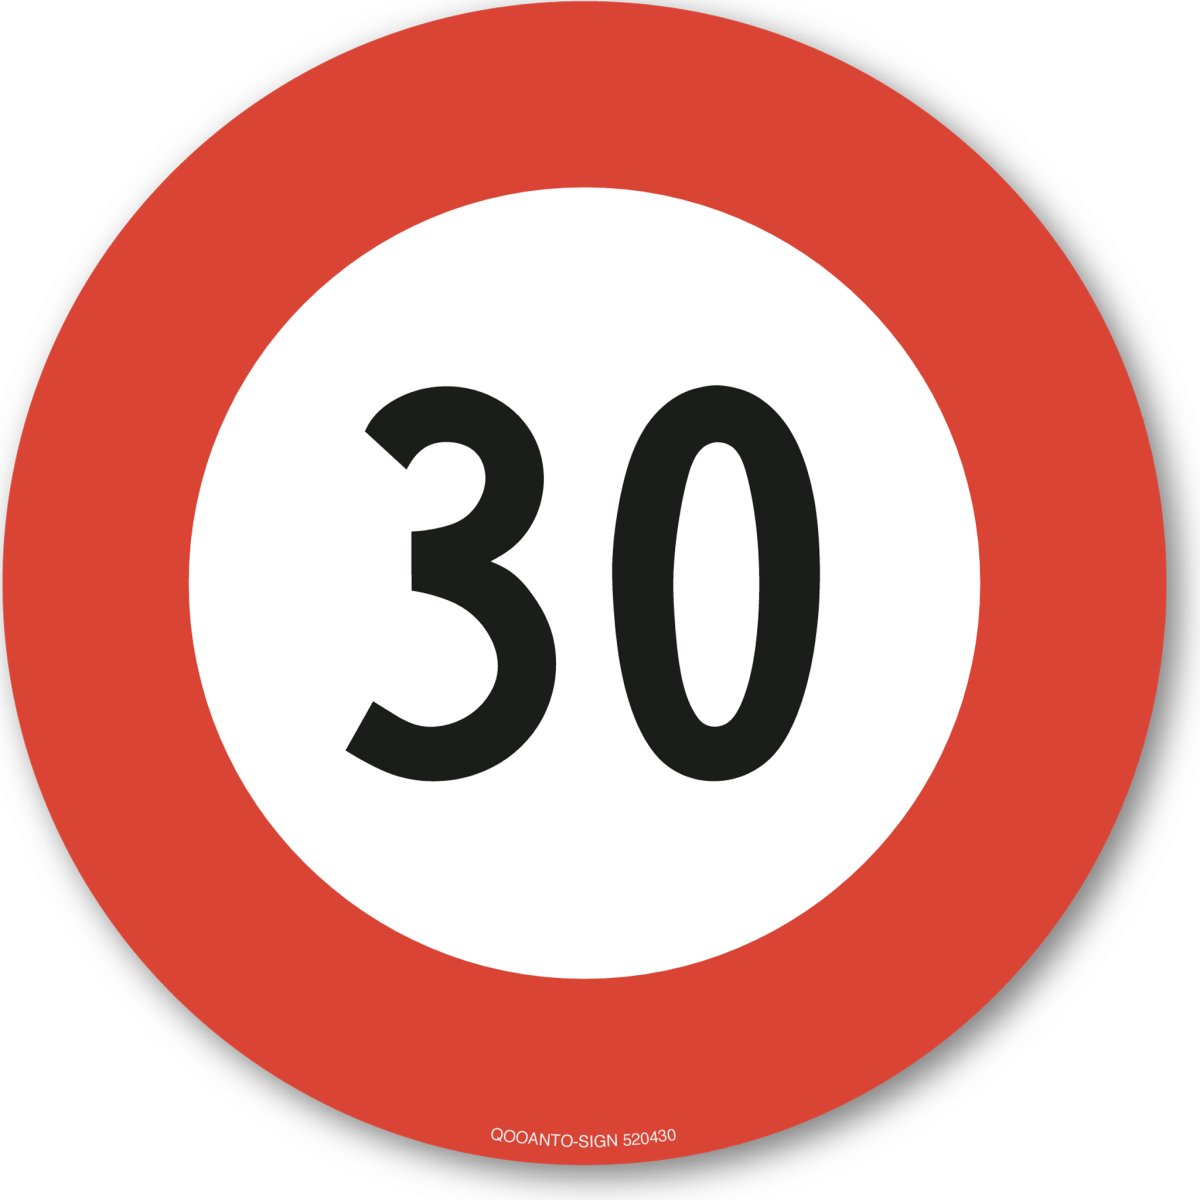 30 Höchstgeschwindigkeit Verkehrsschild oder Aufkleber aus Alu-Verbund oder Selbstklebefolie mit UV-Schutz - QOOANTO-SIGN